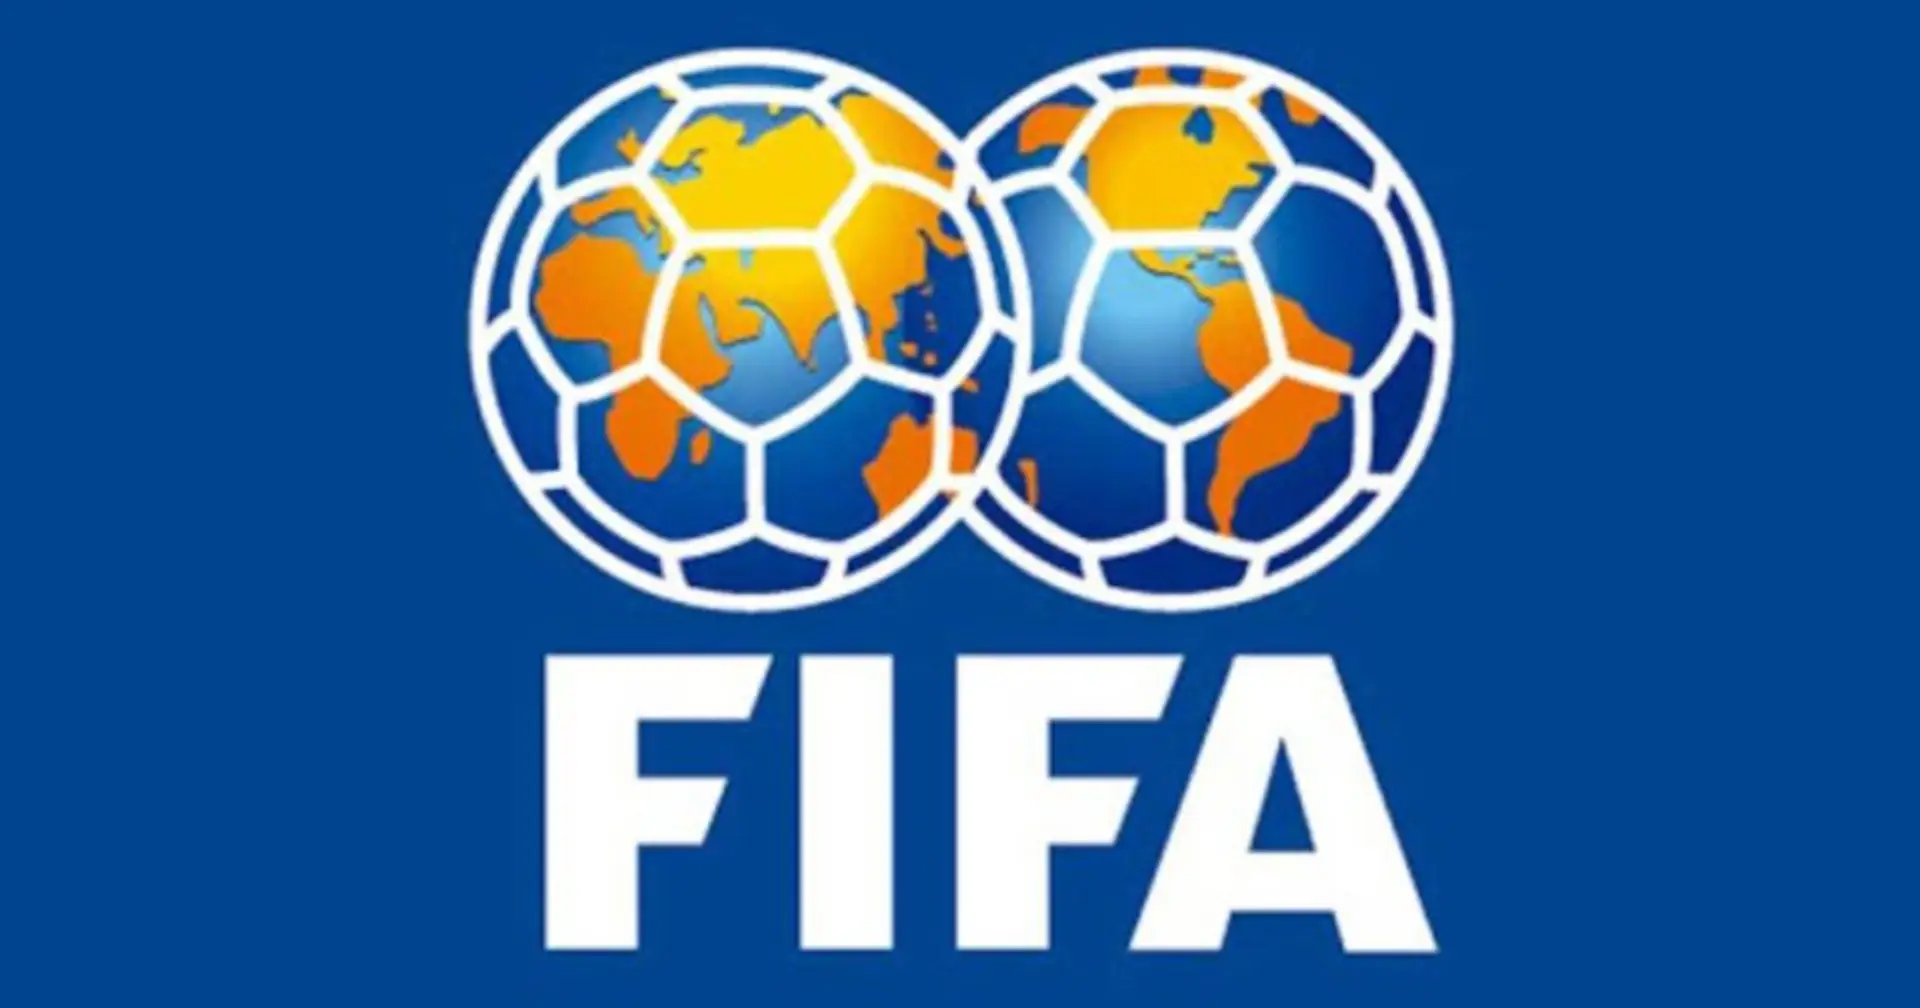 OFFIZIELL: Die FIFA kündigt 3 große Sanktionen gegen Russland inmitten des Ukraine-Krieges an